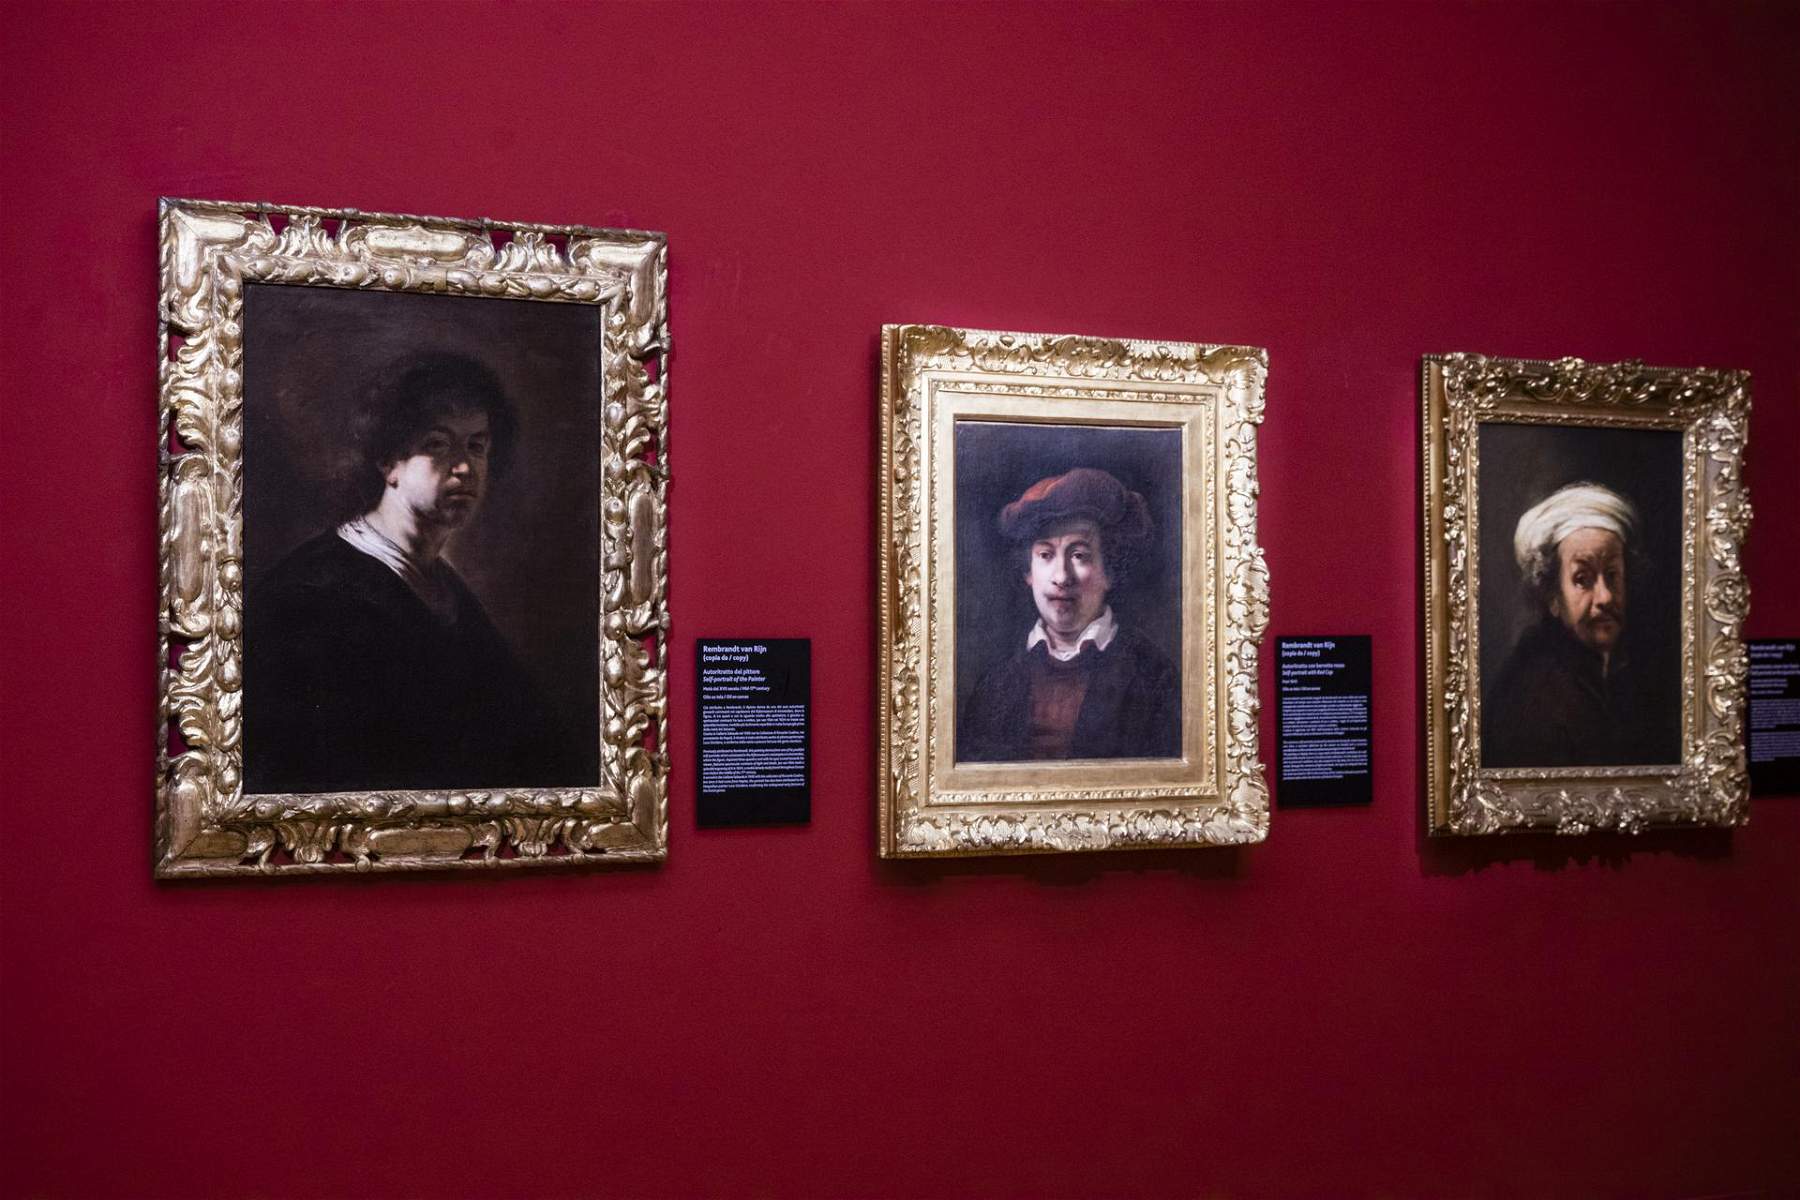 Turin, au Musei Reali, une exposition consacrée à Rembrandt avec une vingtaine d'œuvres.